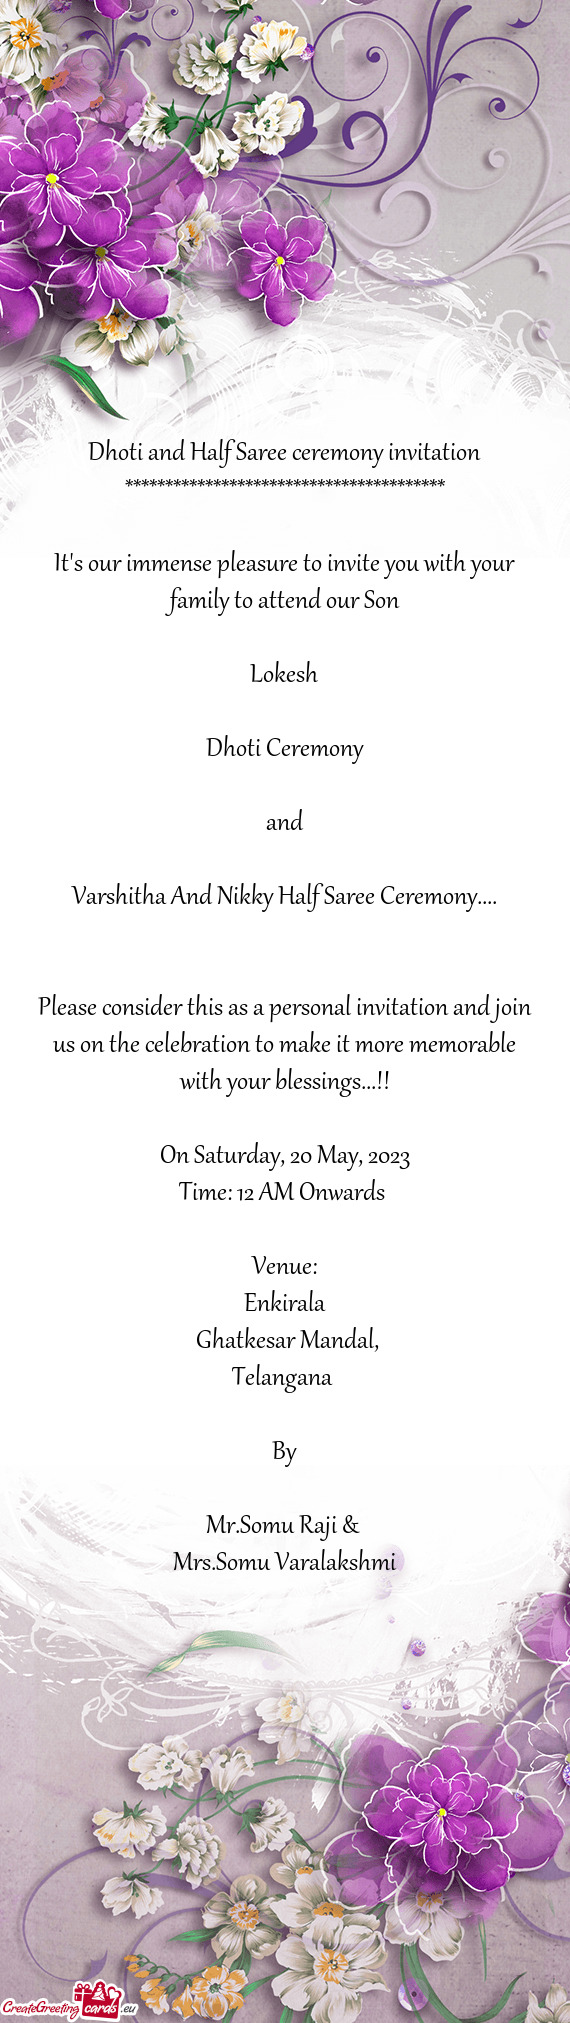 Varshitha And Nikky Half Saree Ceremony